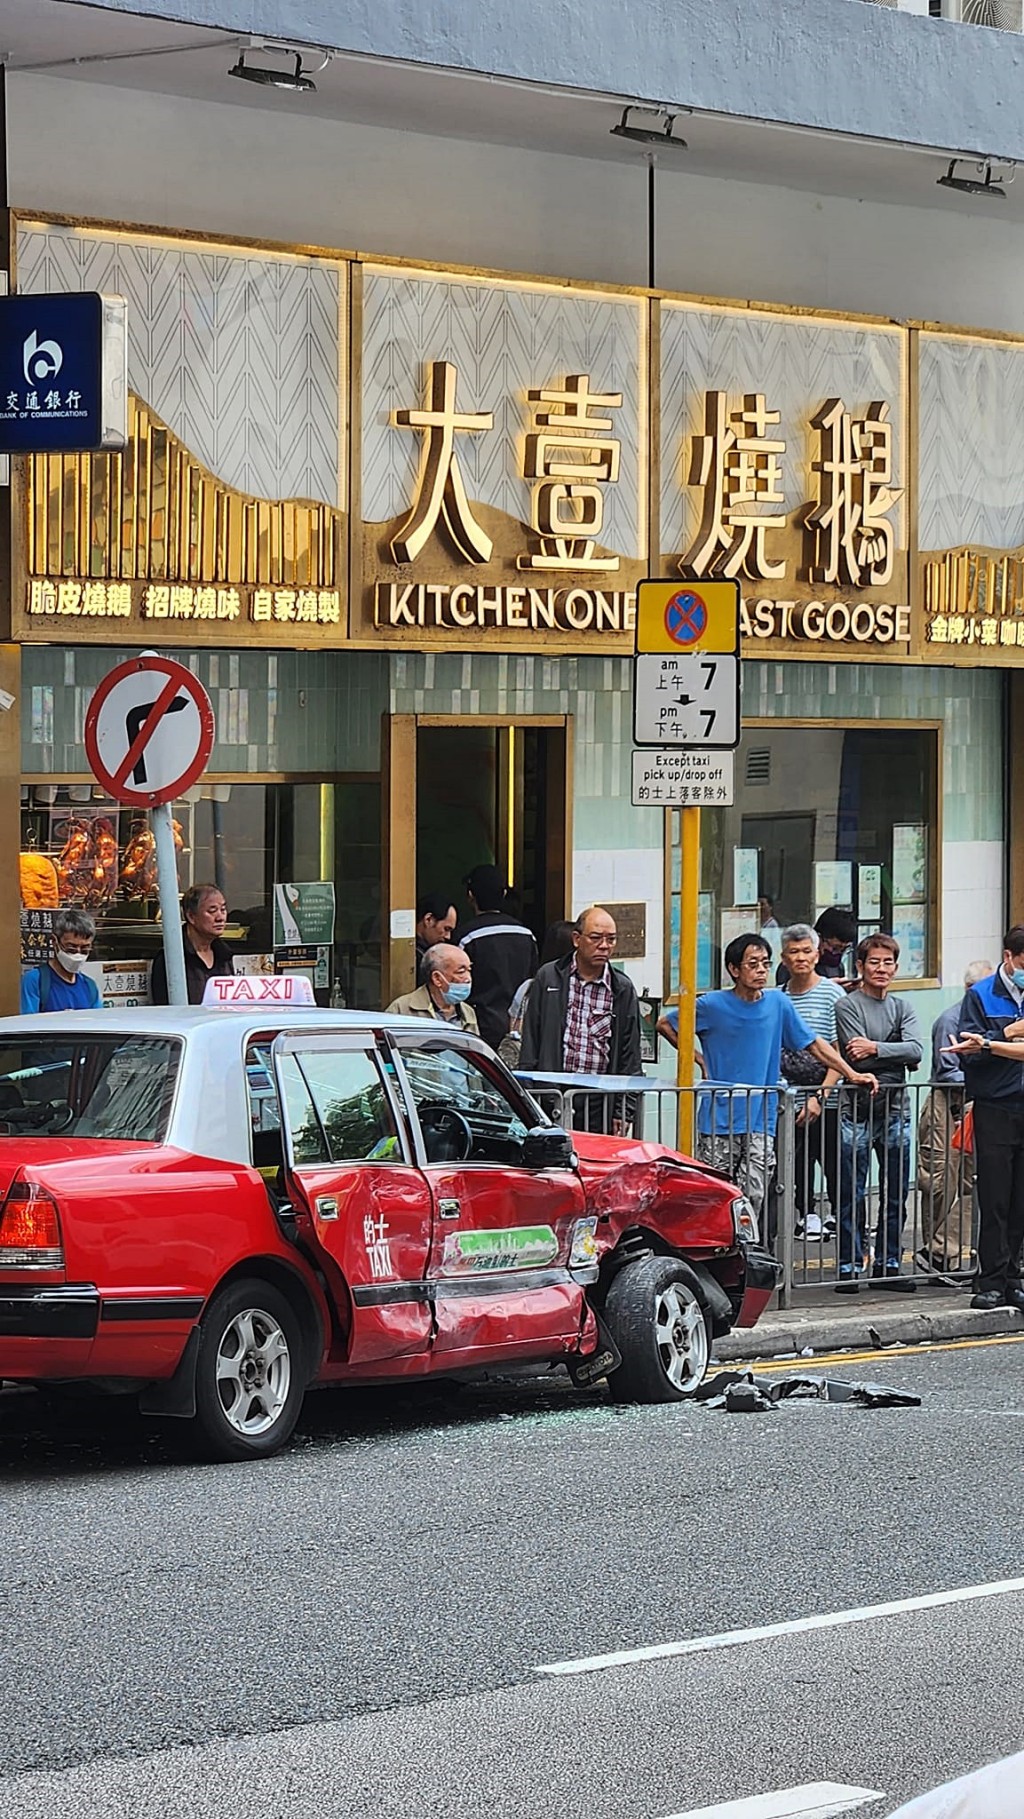 的士右车身凹陷。fb：香港交通突发报料区突发事故资迅谷